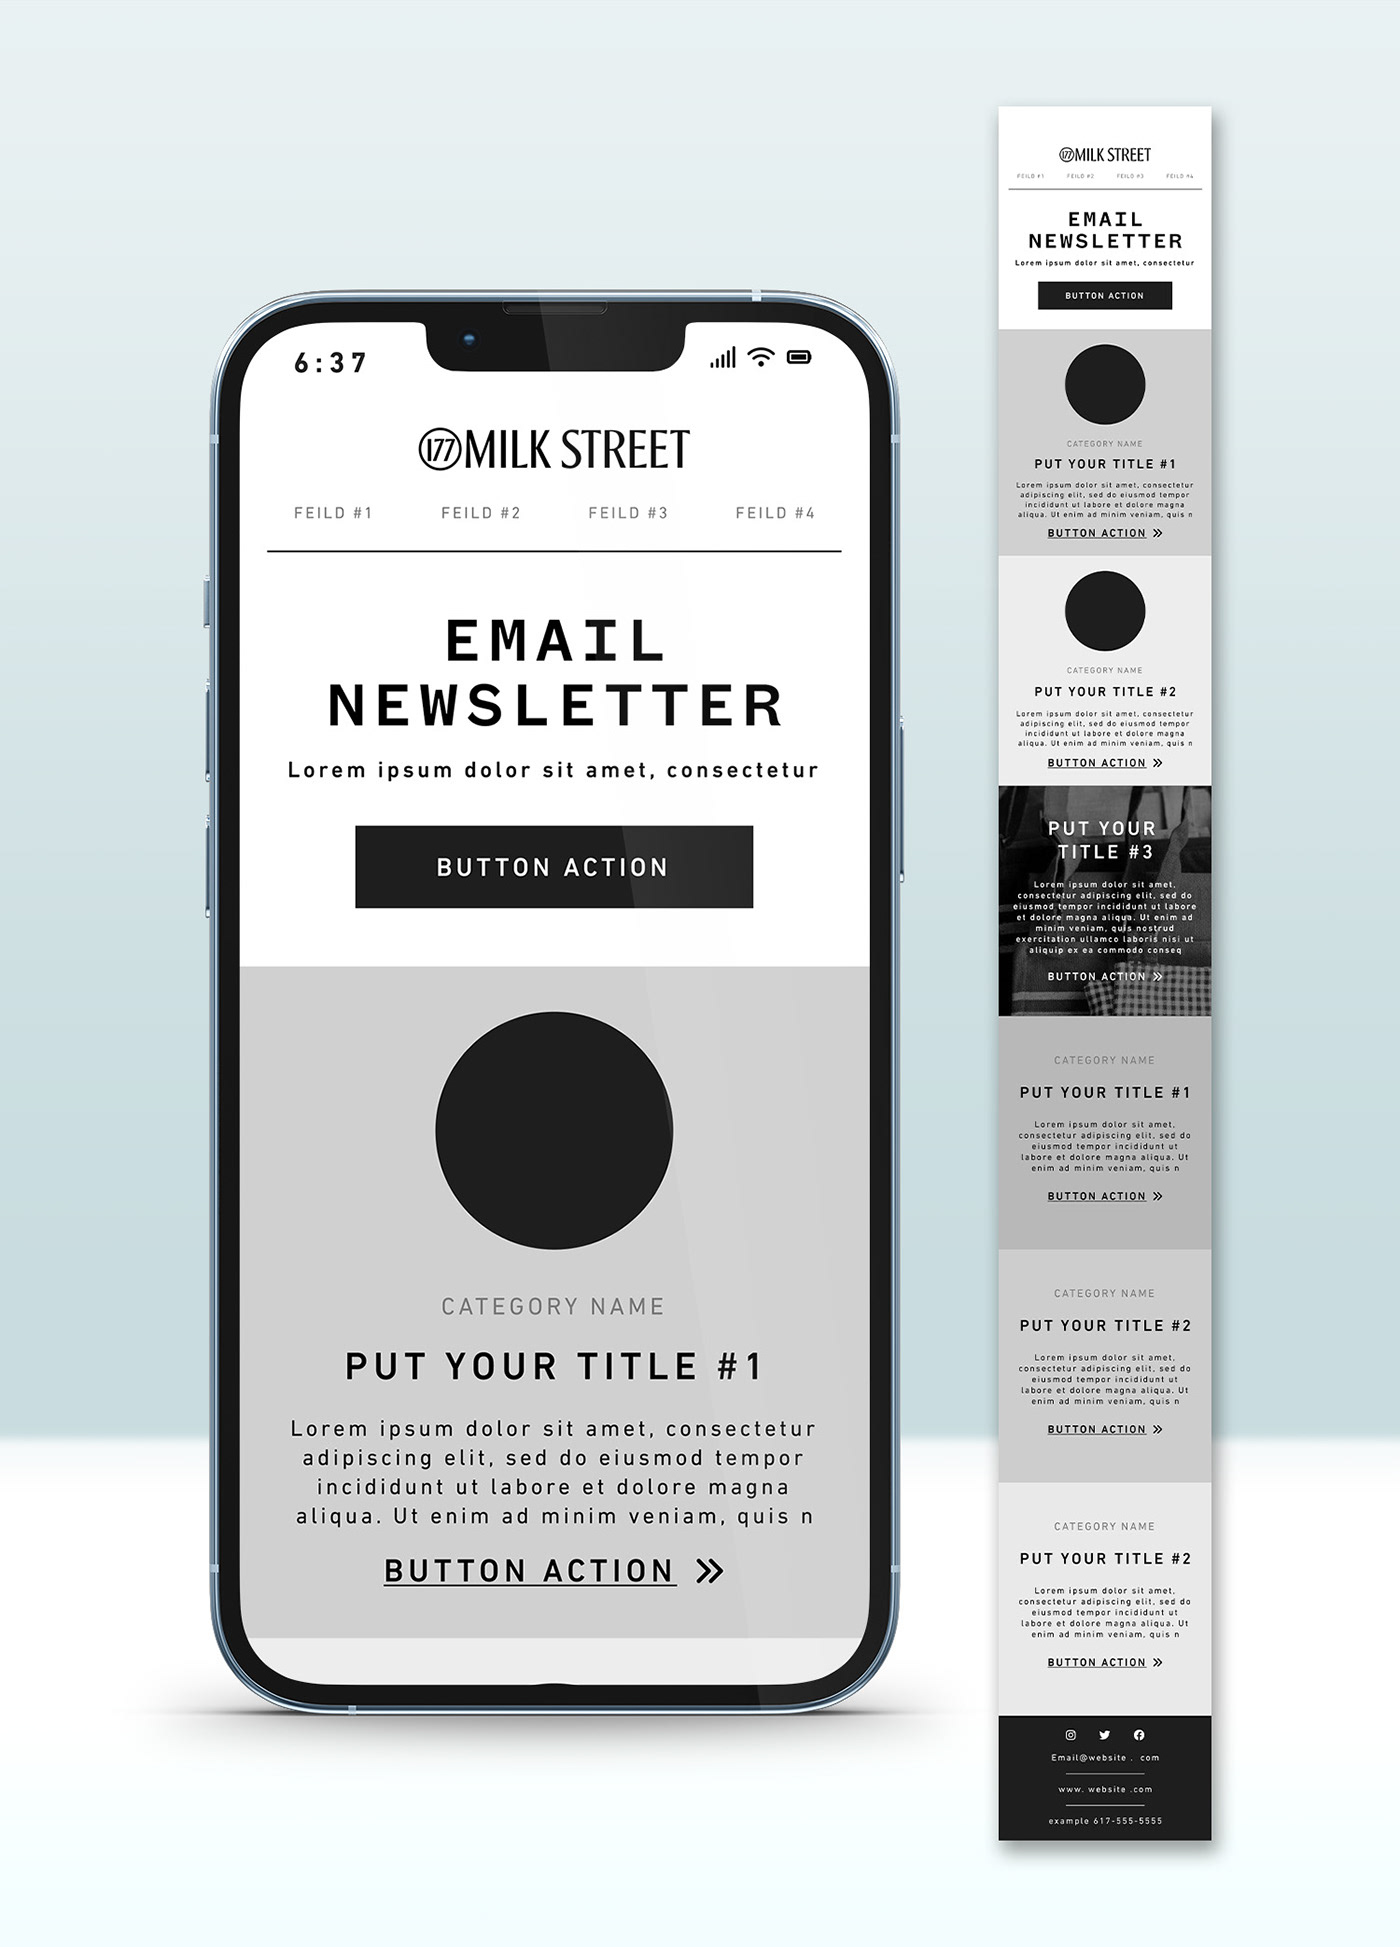 EmailDesign emailmarketing emailnewsletter marketing digital Email Design email template Newsletter Design email marketing